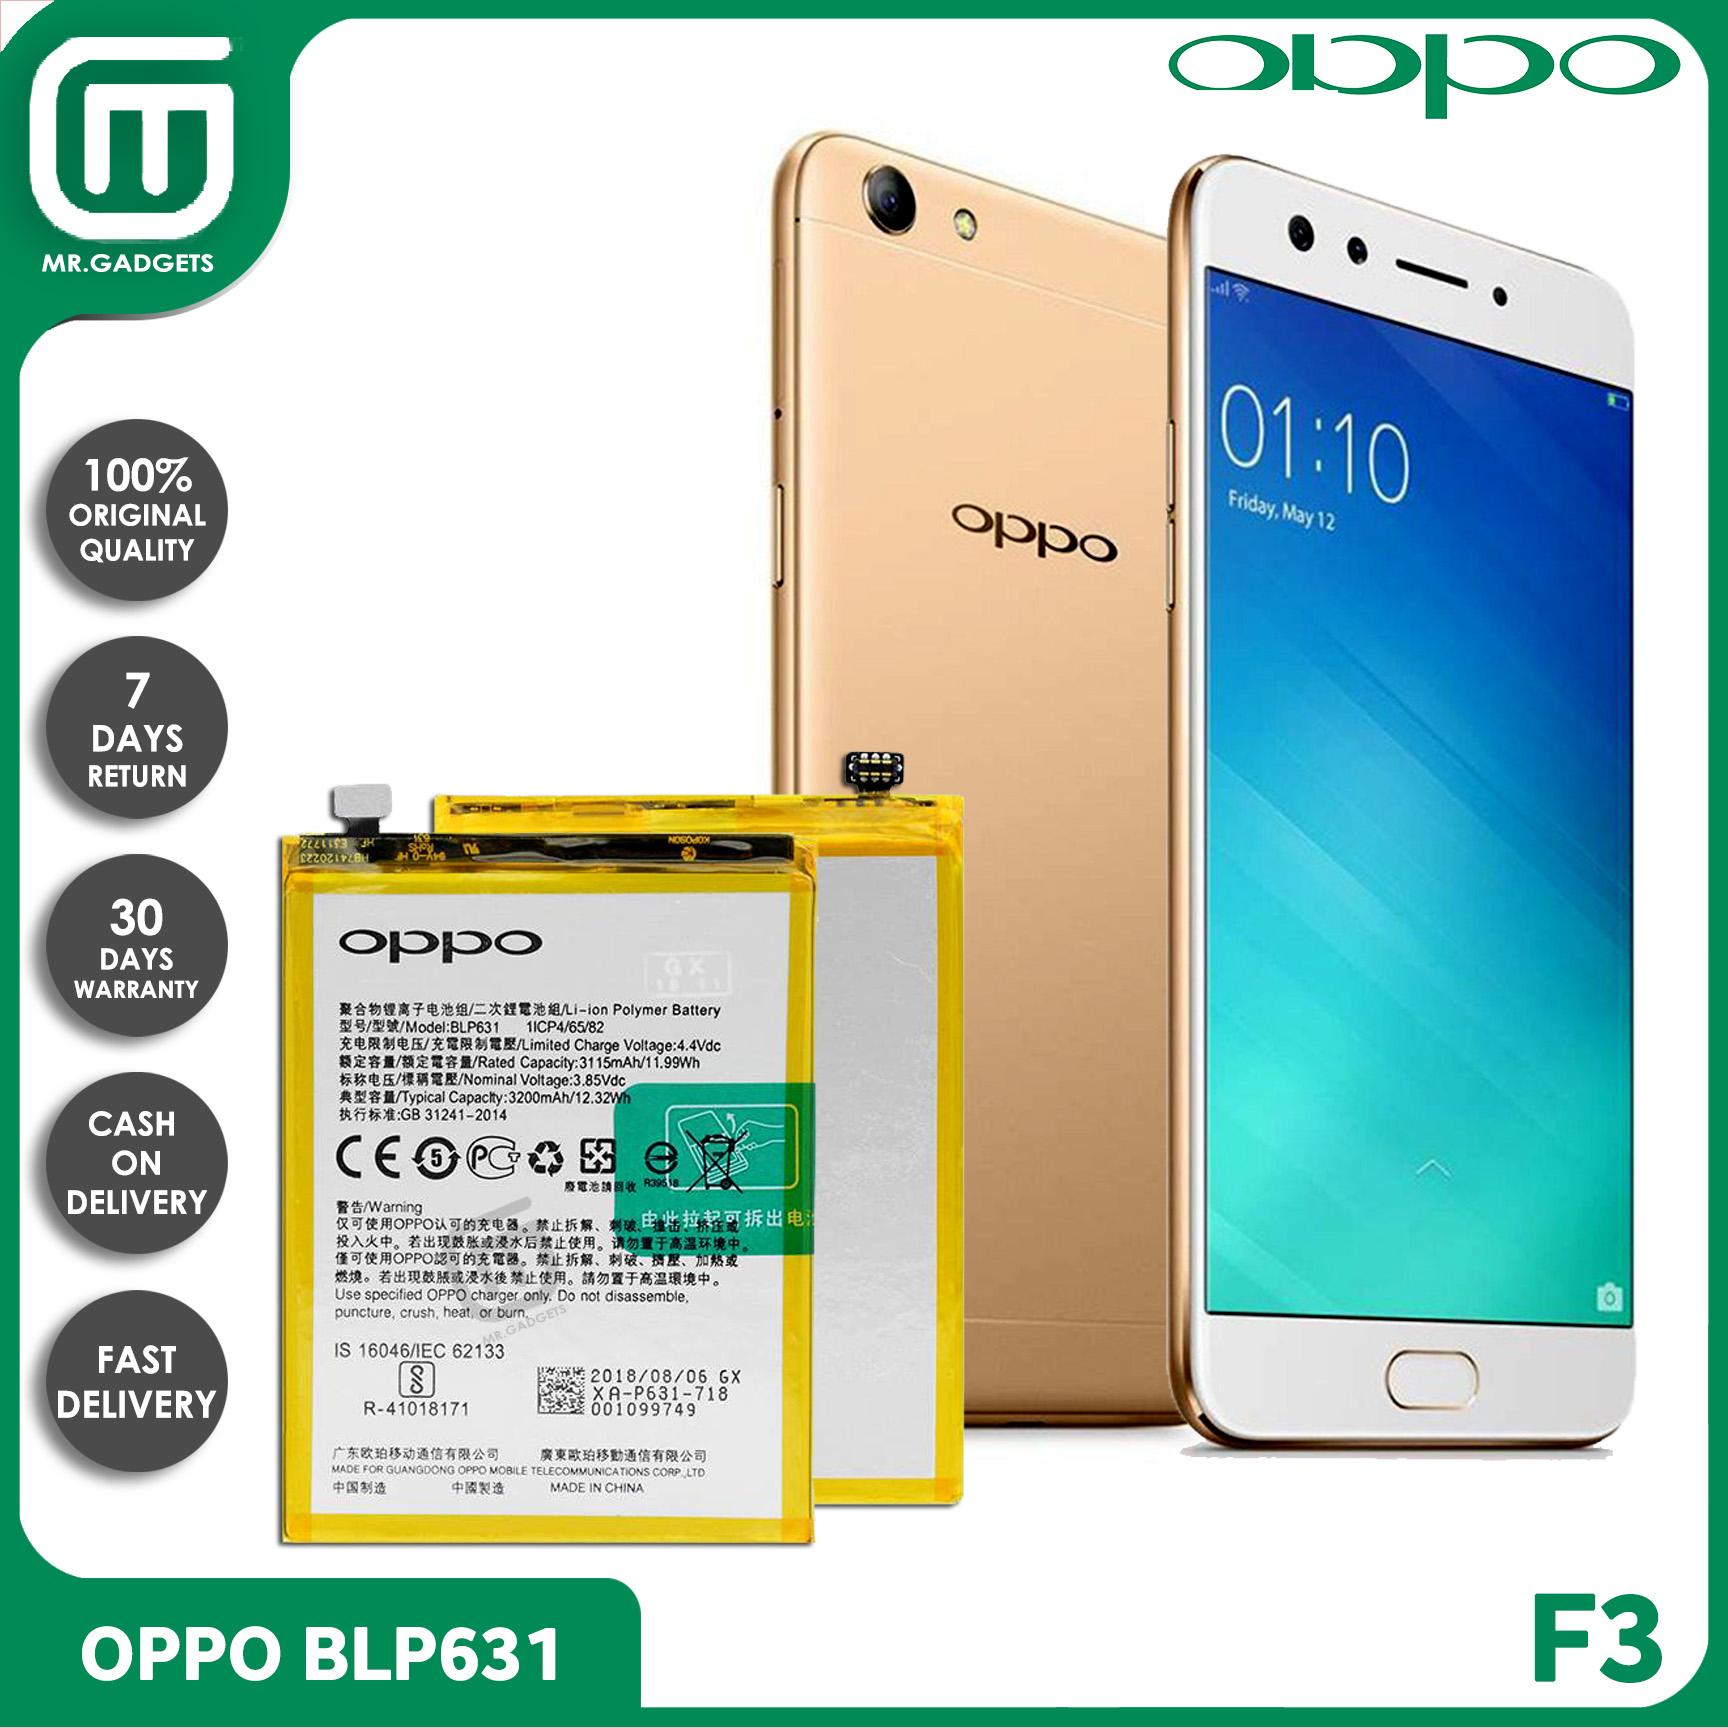 Oppo New Built In Battery Blp631 Original Equipment Manufacturer Premium Quality For Oppo F3 Model 17 Lazada Ph